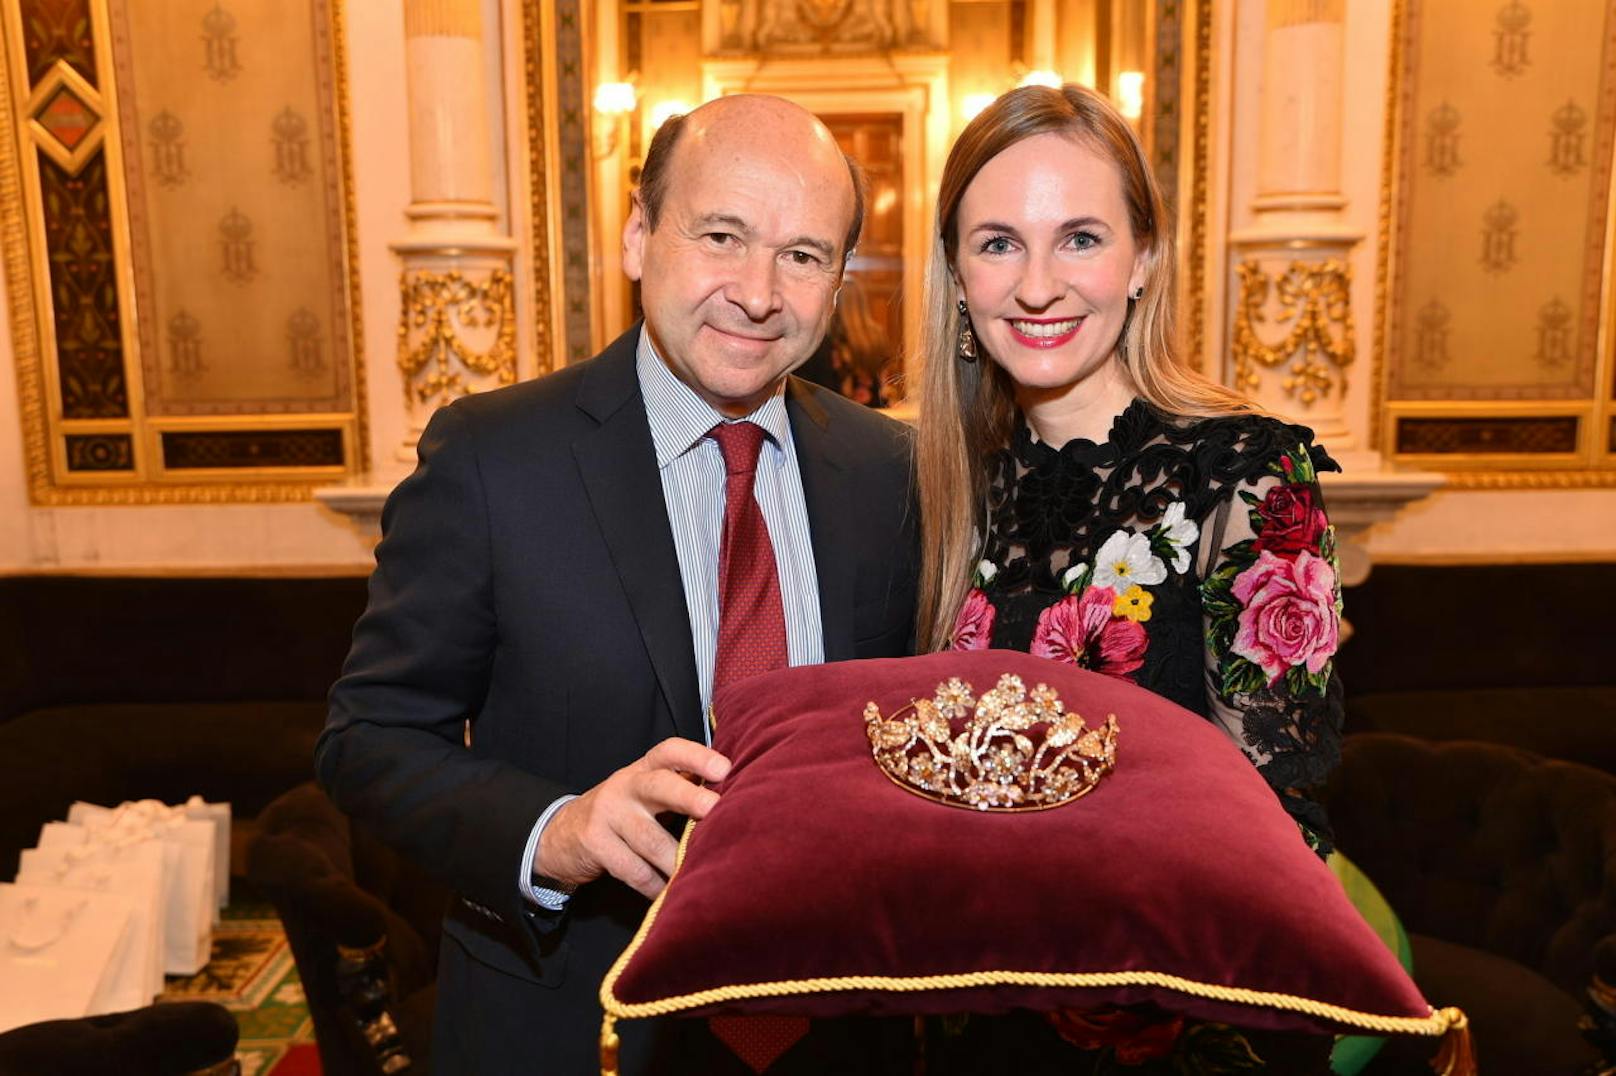 Staatsoperndirektor Dominique Meyer und Opernballorganisatorin Maria Grossbauer präsentierten die Opernball-Tiara designes von Dolce & Gabbana